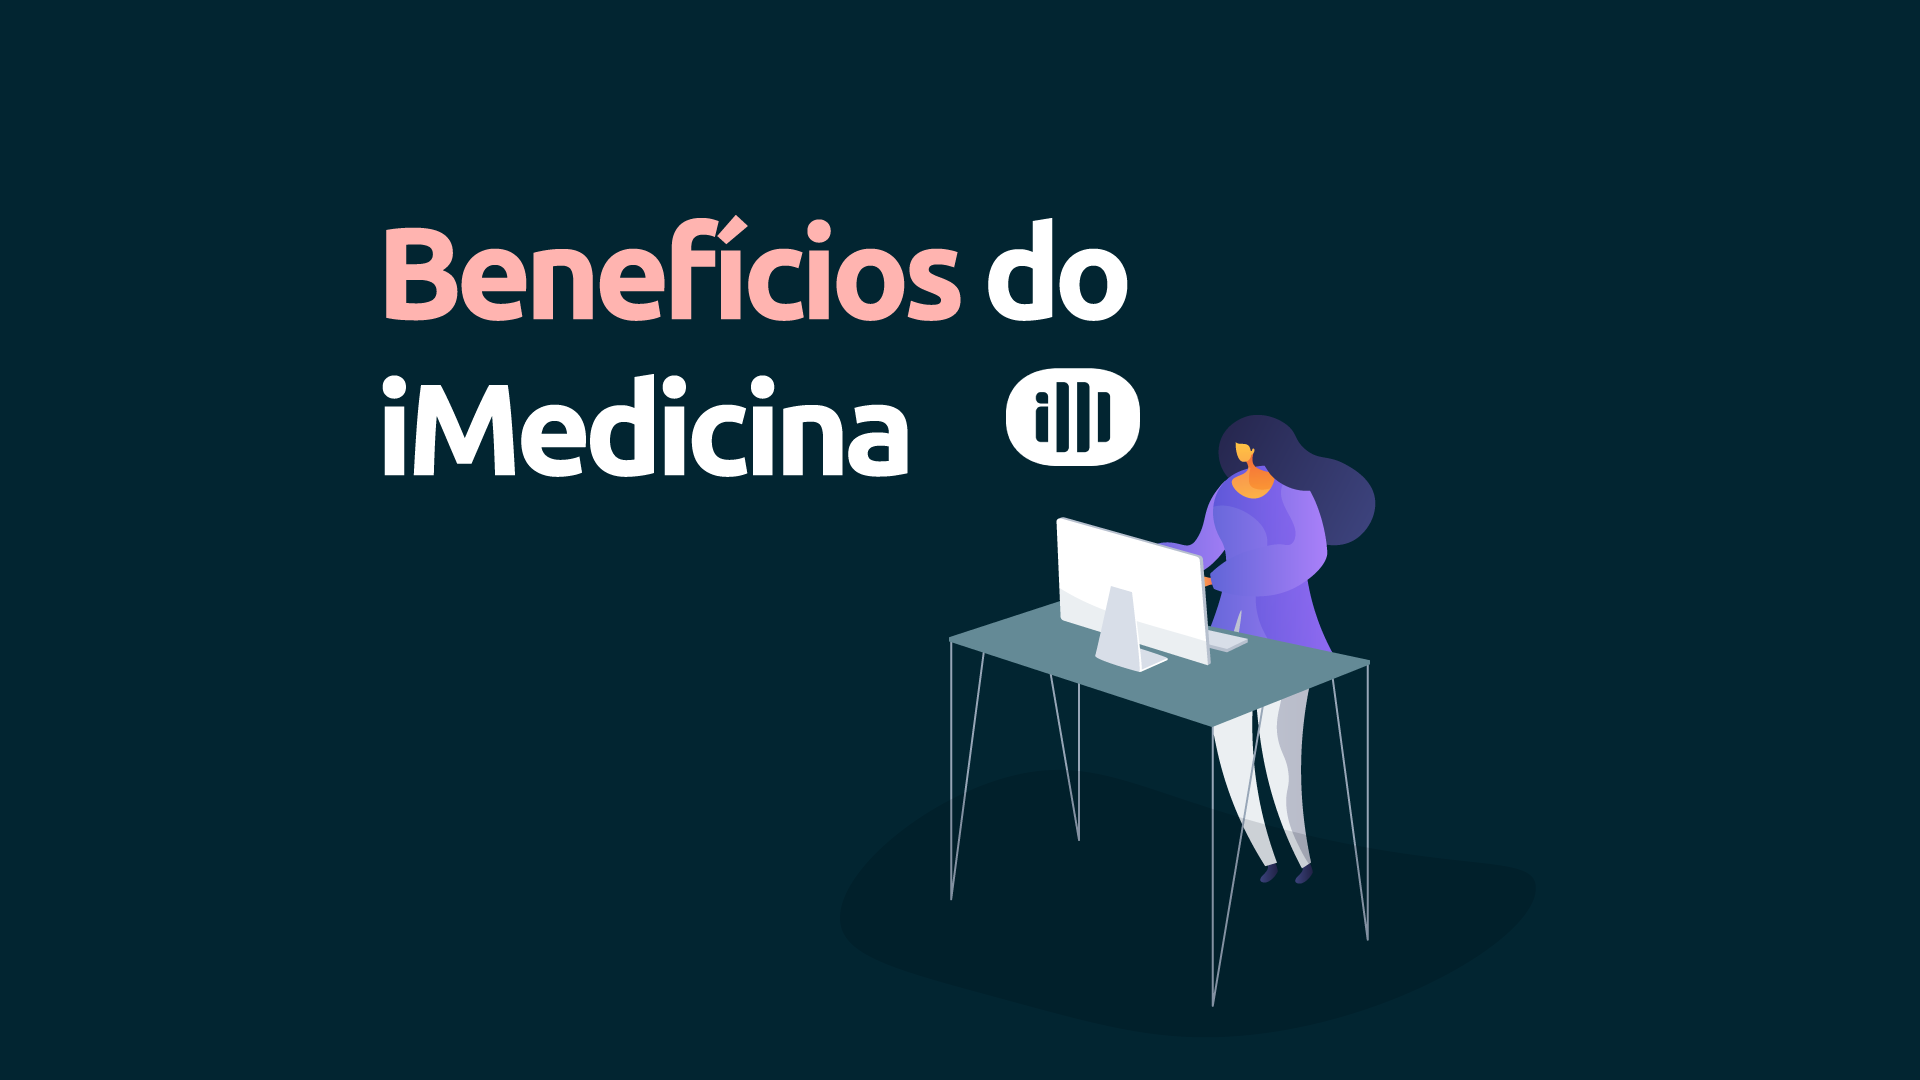 Benefícios do iMedicina para Secretárias de Consultórios Médicos